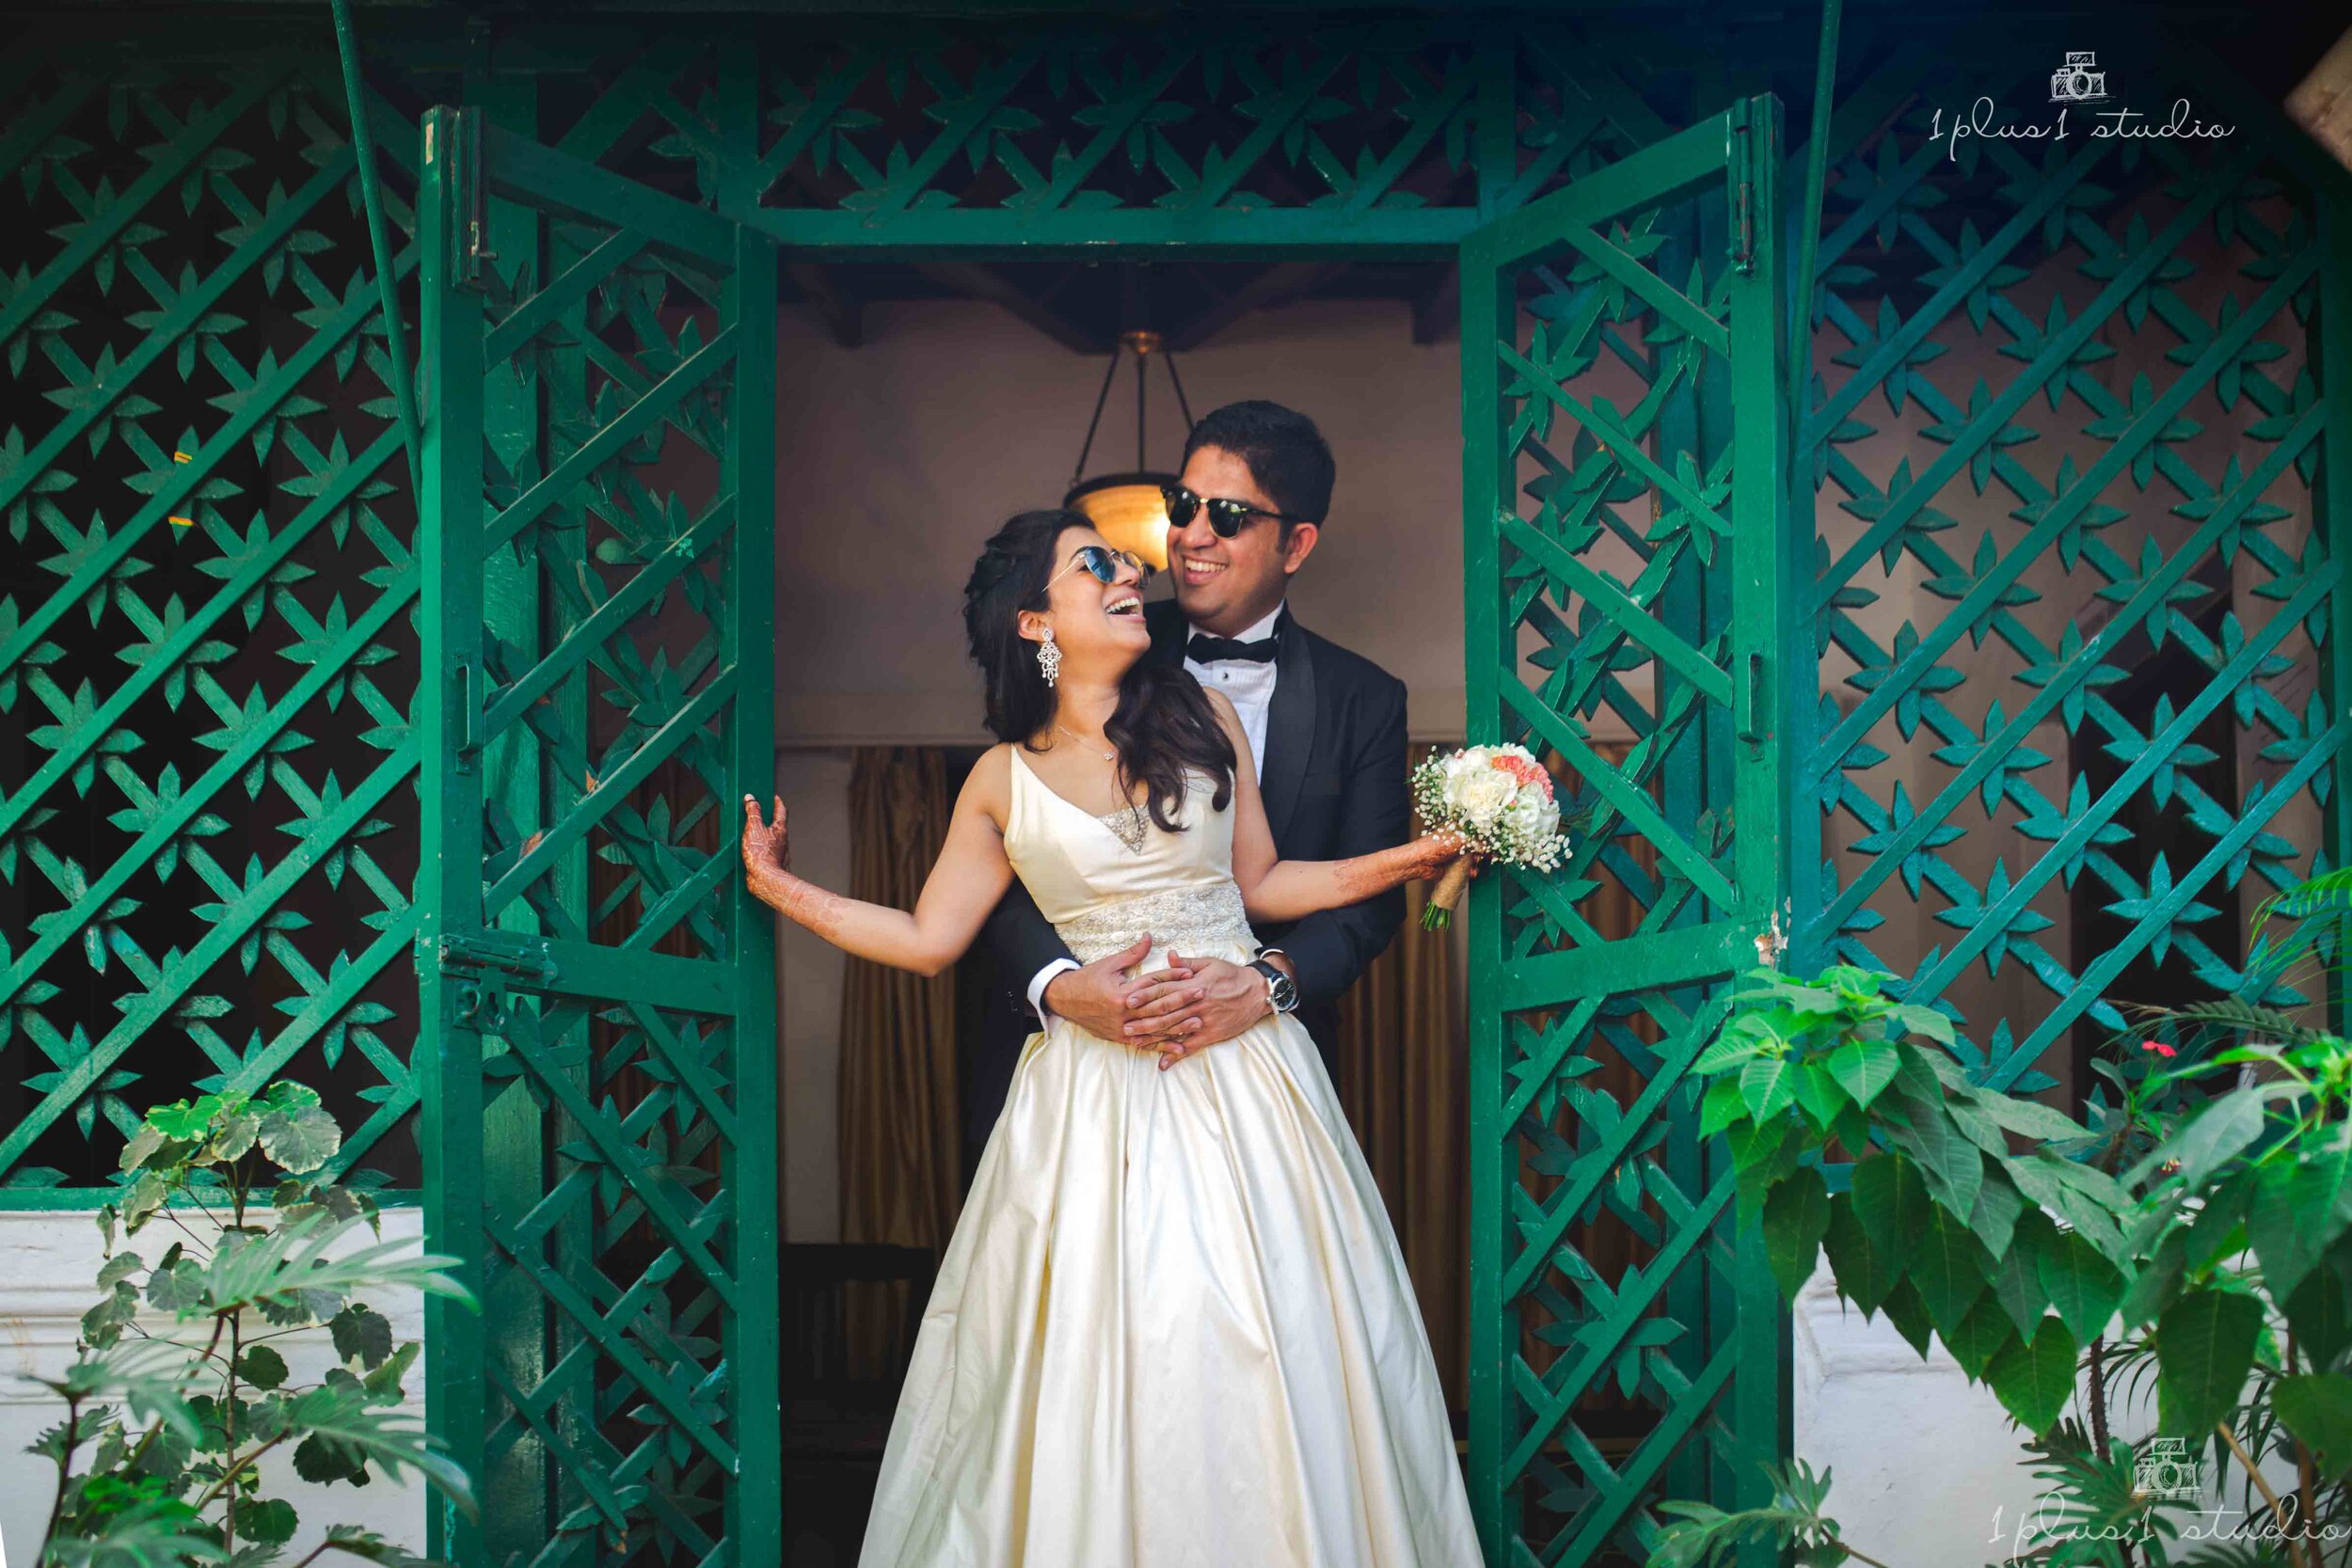 Bangalow 7 pre wedding couple shoot Anisha Aditya -3.jpg